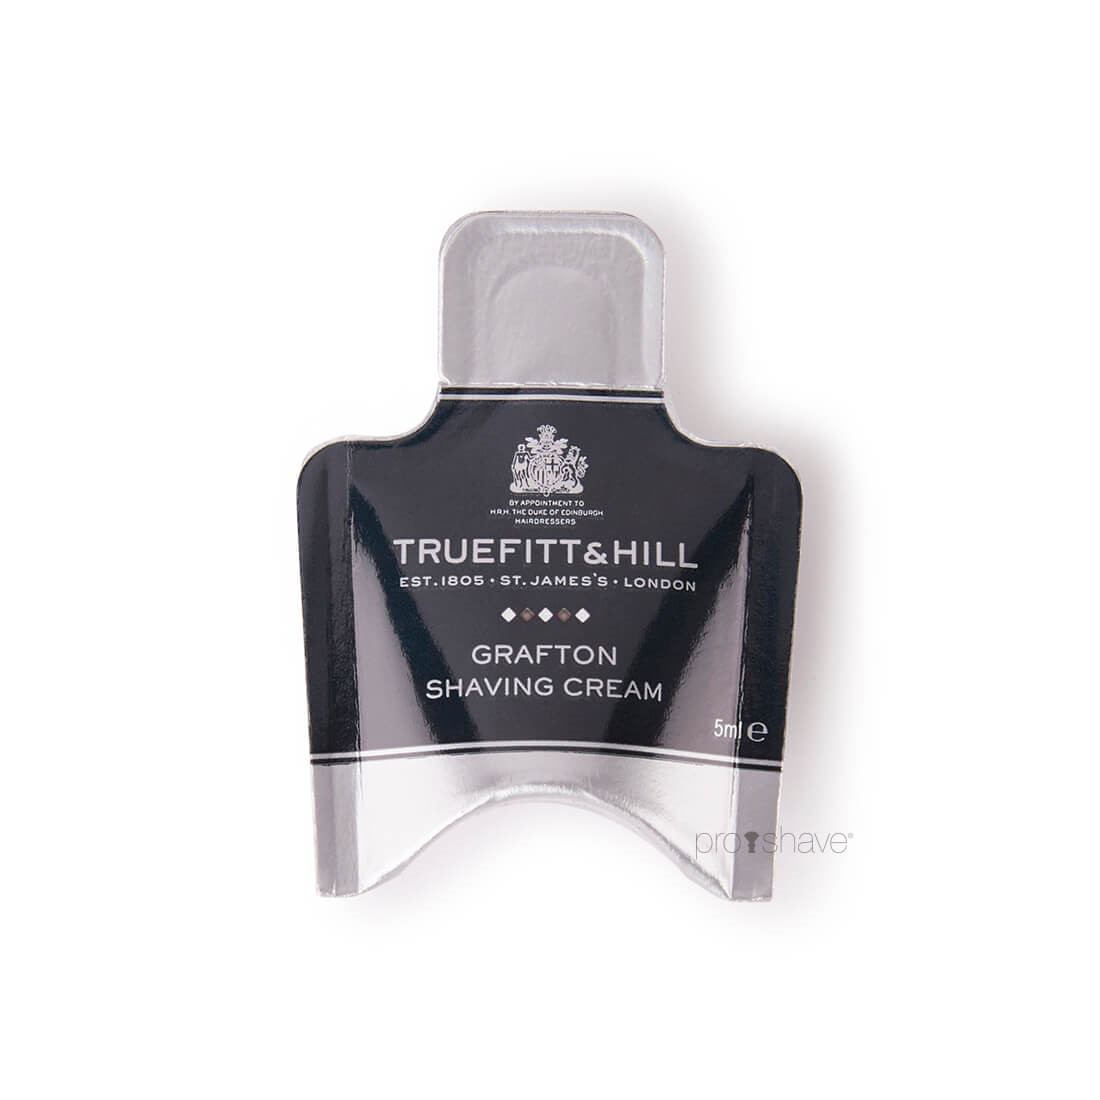 Truefitt & Hill Grafton Shaving Cream Sample Pack, 5 ml.